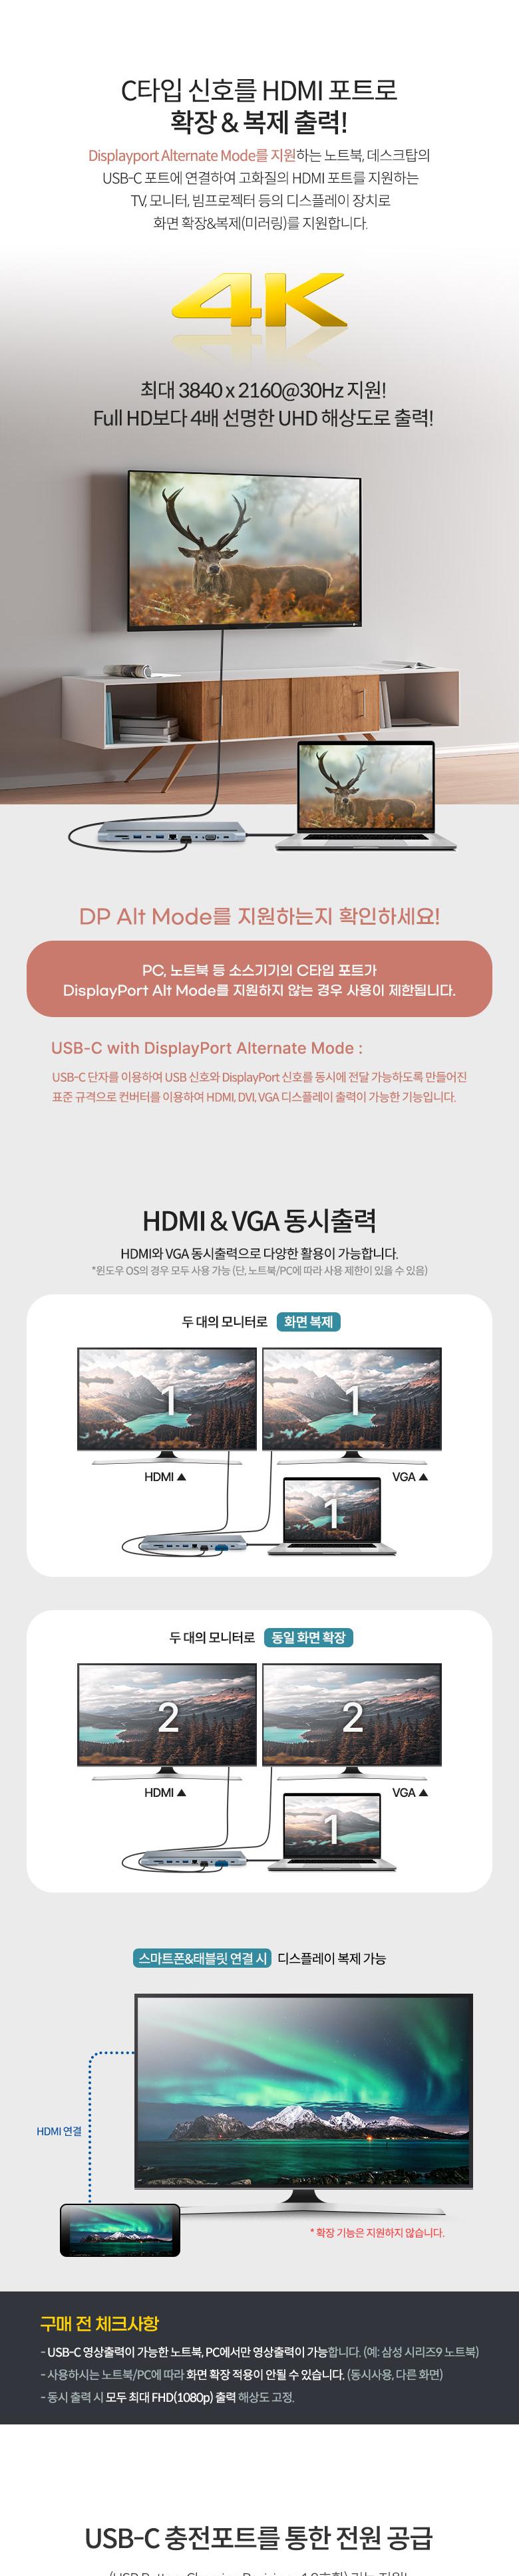 Coms USB CŸ Ƽ  ŷ̼ 11 in 1 HDMI 4K 30Hz VGA USB 3.1(Type C) PD SD TF Card Micro SD USB 3.0 3.5mm RJ45 ̴  LAN ŷ̼ CŸԵŷ CŸԵŷ̼ 굵ŷ̼ Ƽ굵ŷ̼ Ƽ Ƽŷ̼ CŸ굵ŷ̼ CŸԸƼ굵ŷ̼ CŸԸƼ